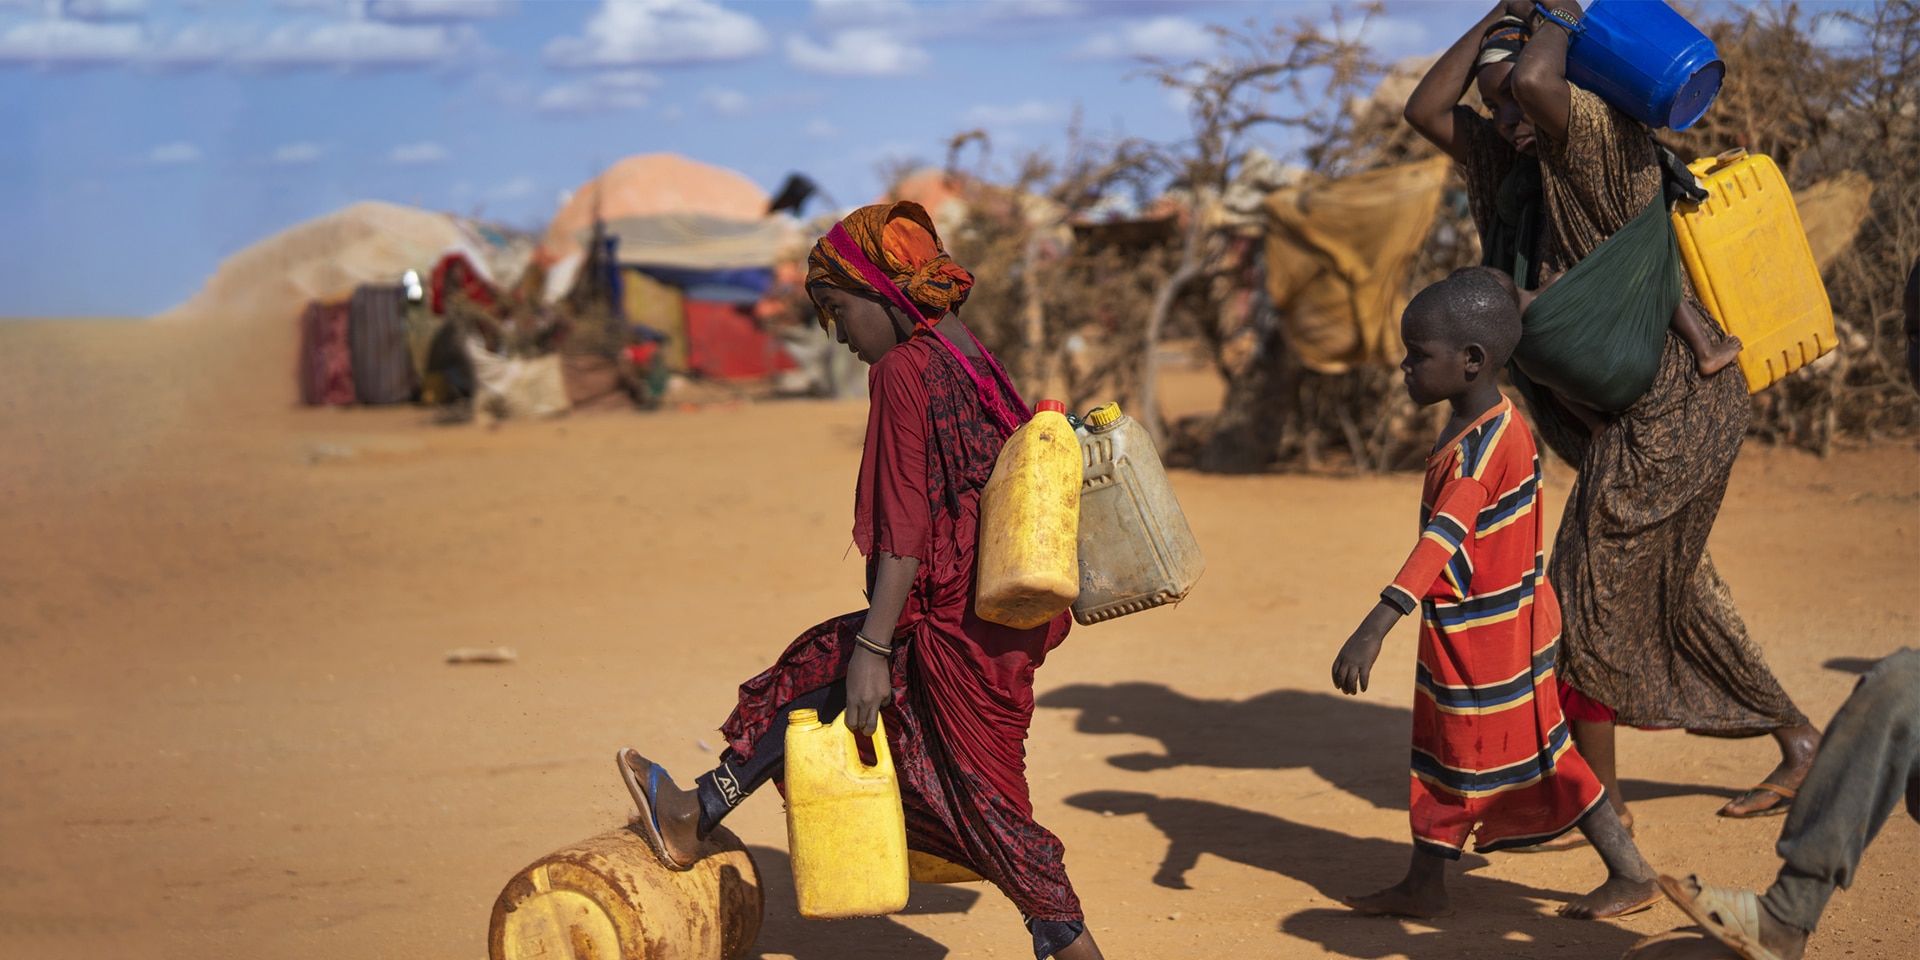 Mujeres y niños transportan bidones de agua a través de una aldea con chozas en Somalia.